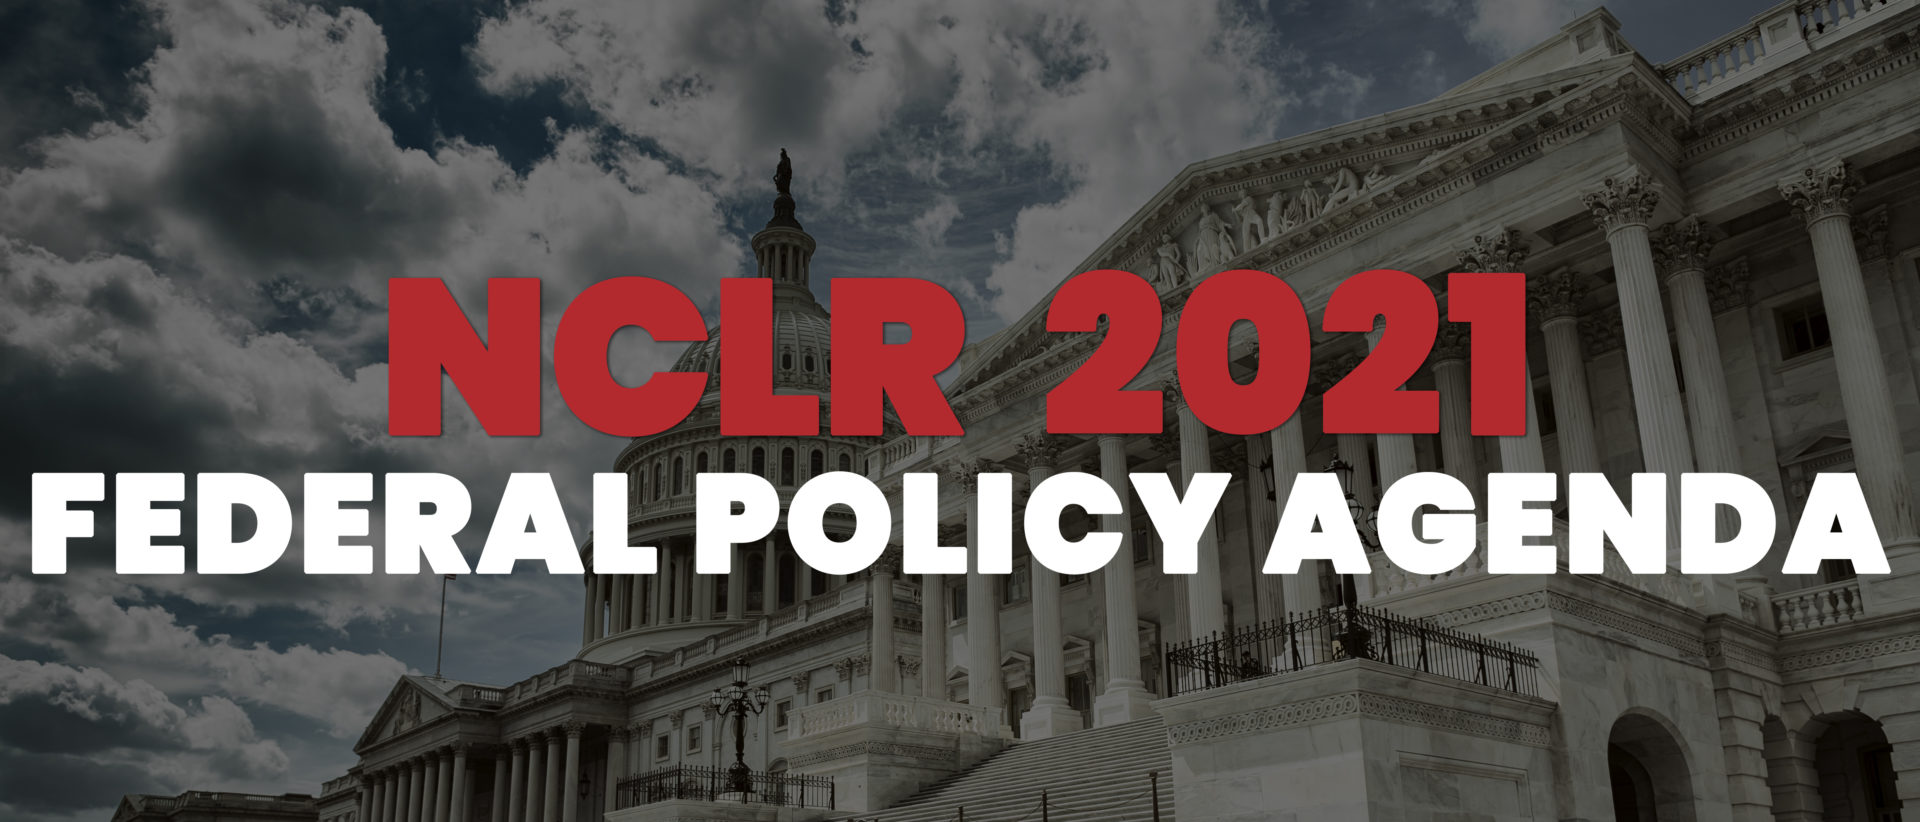 NCLR 2021 Federal Policy Agenda